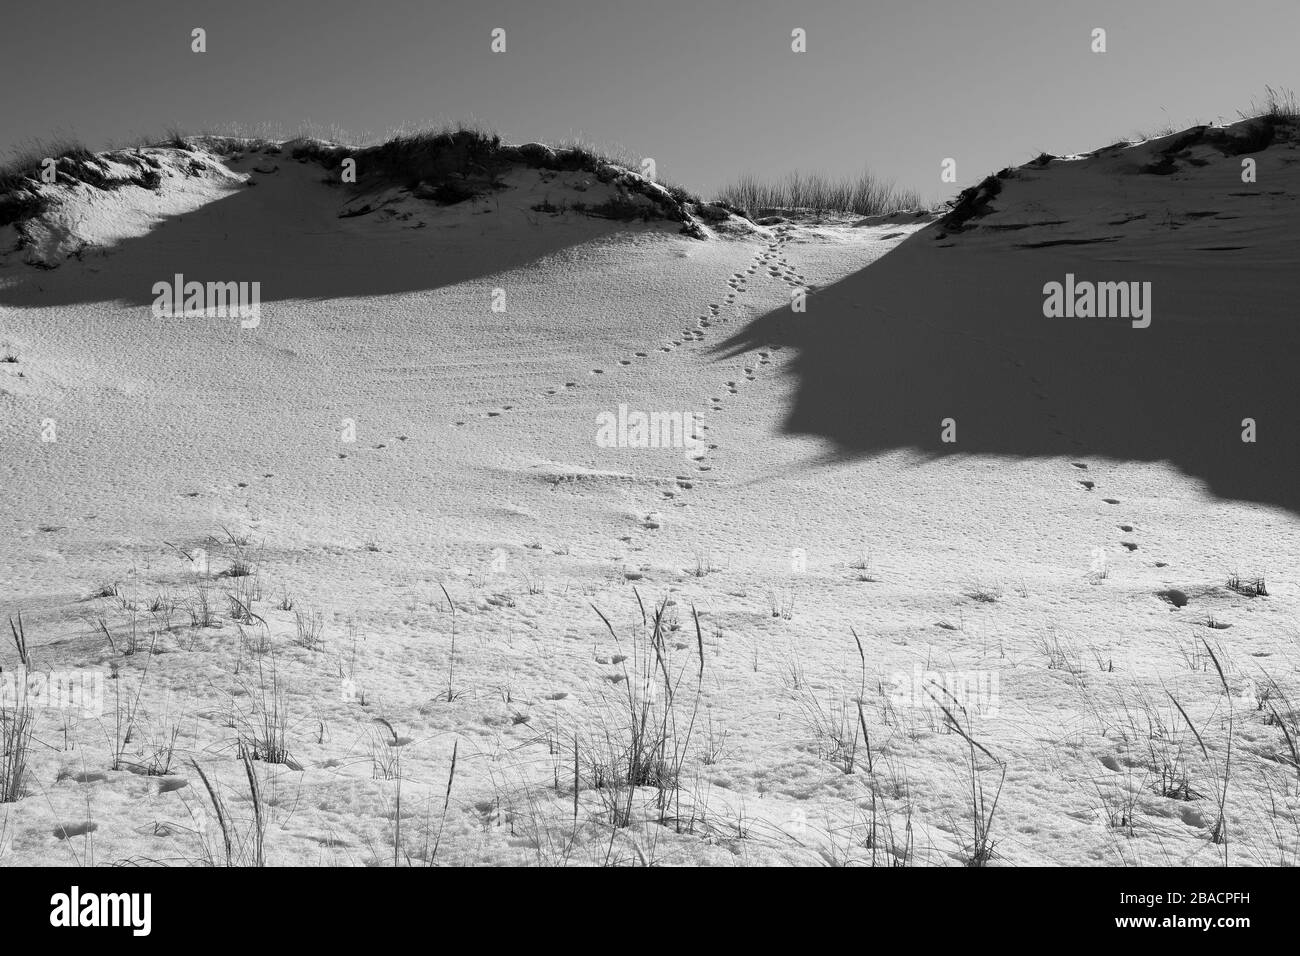 Immagine in scala di grigi delle tracce di un animale sul terreno innevato Foto Stock